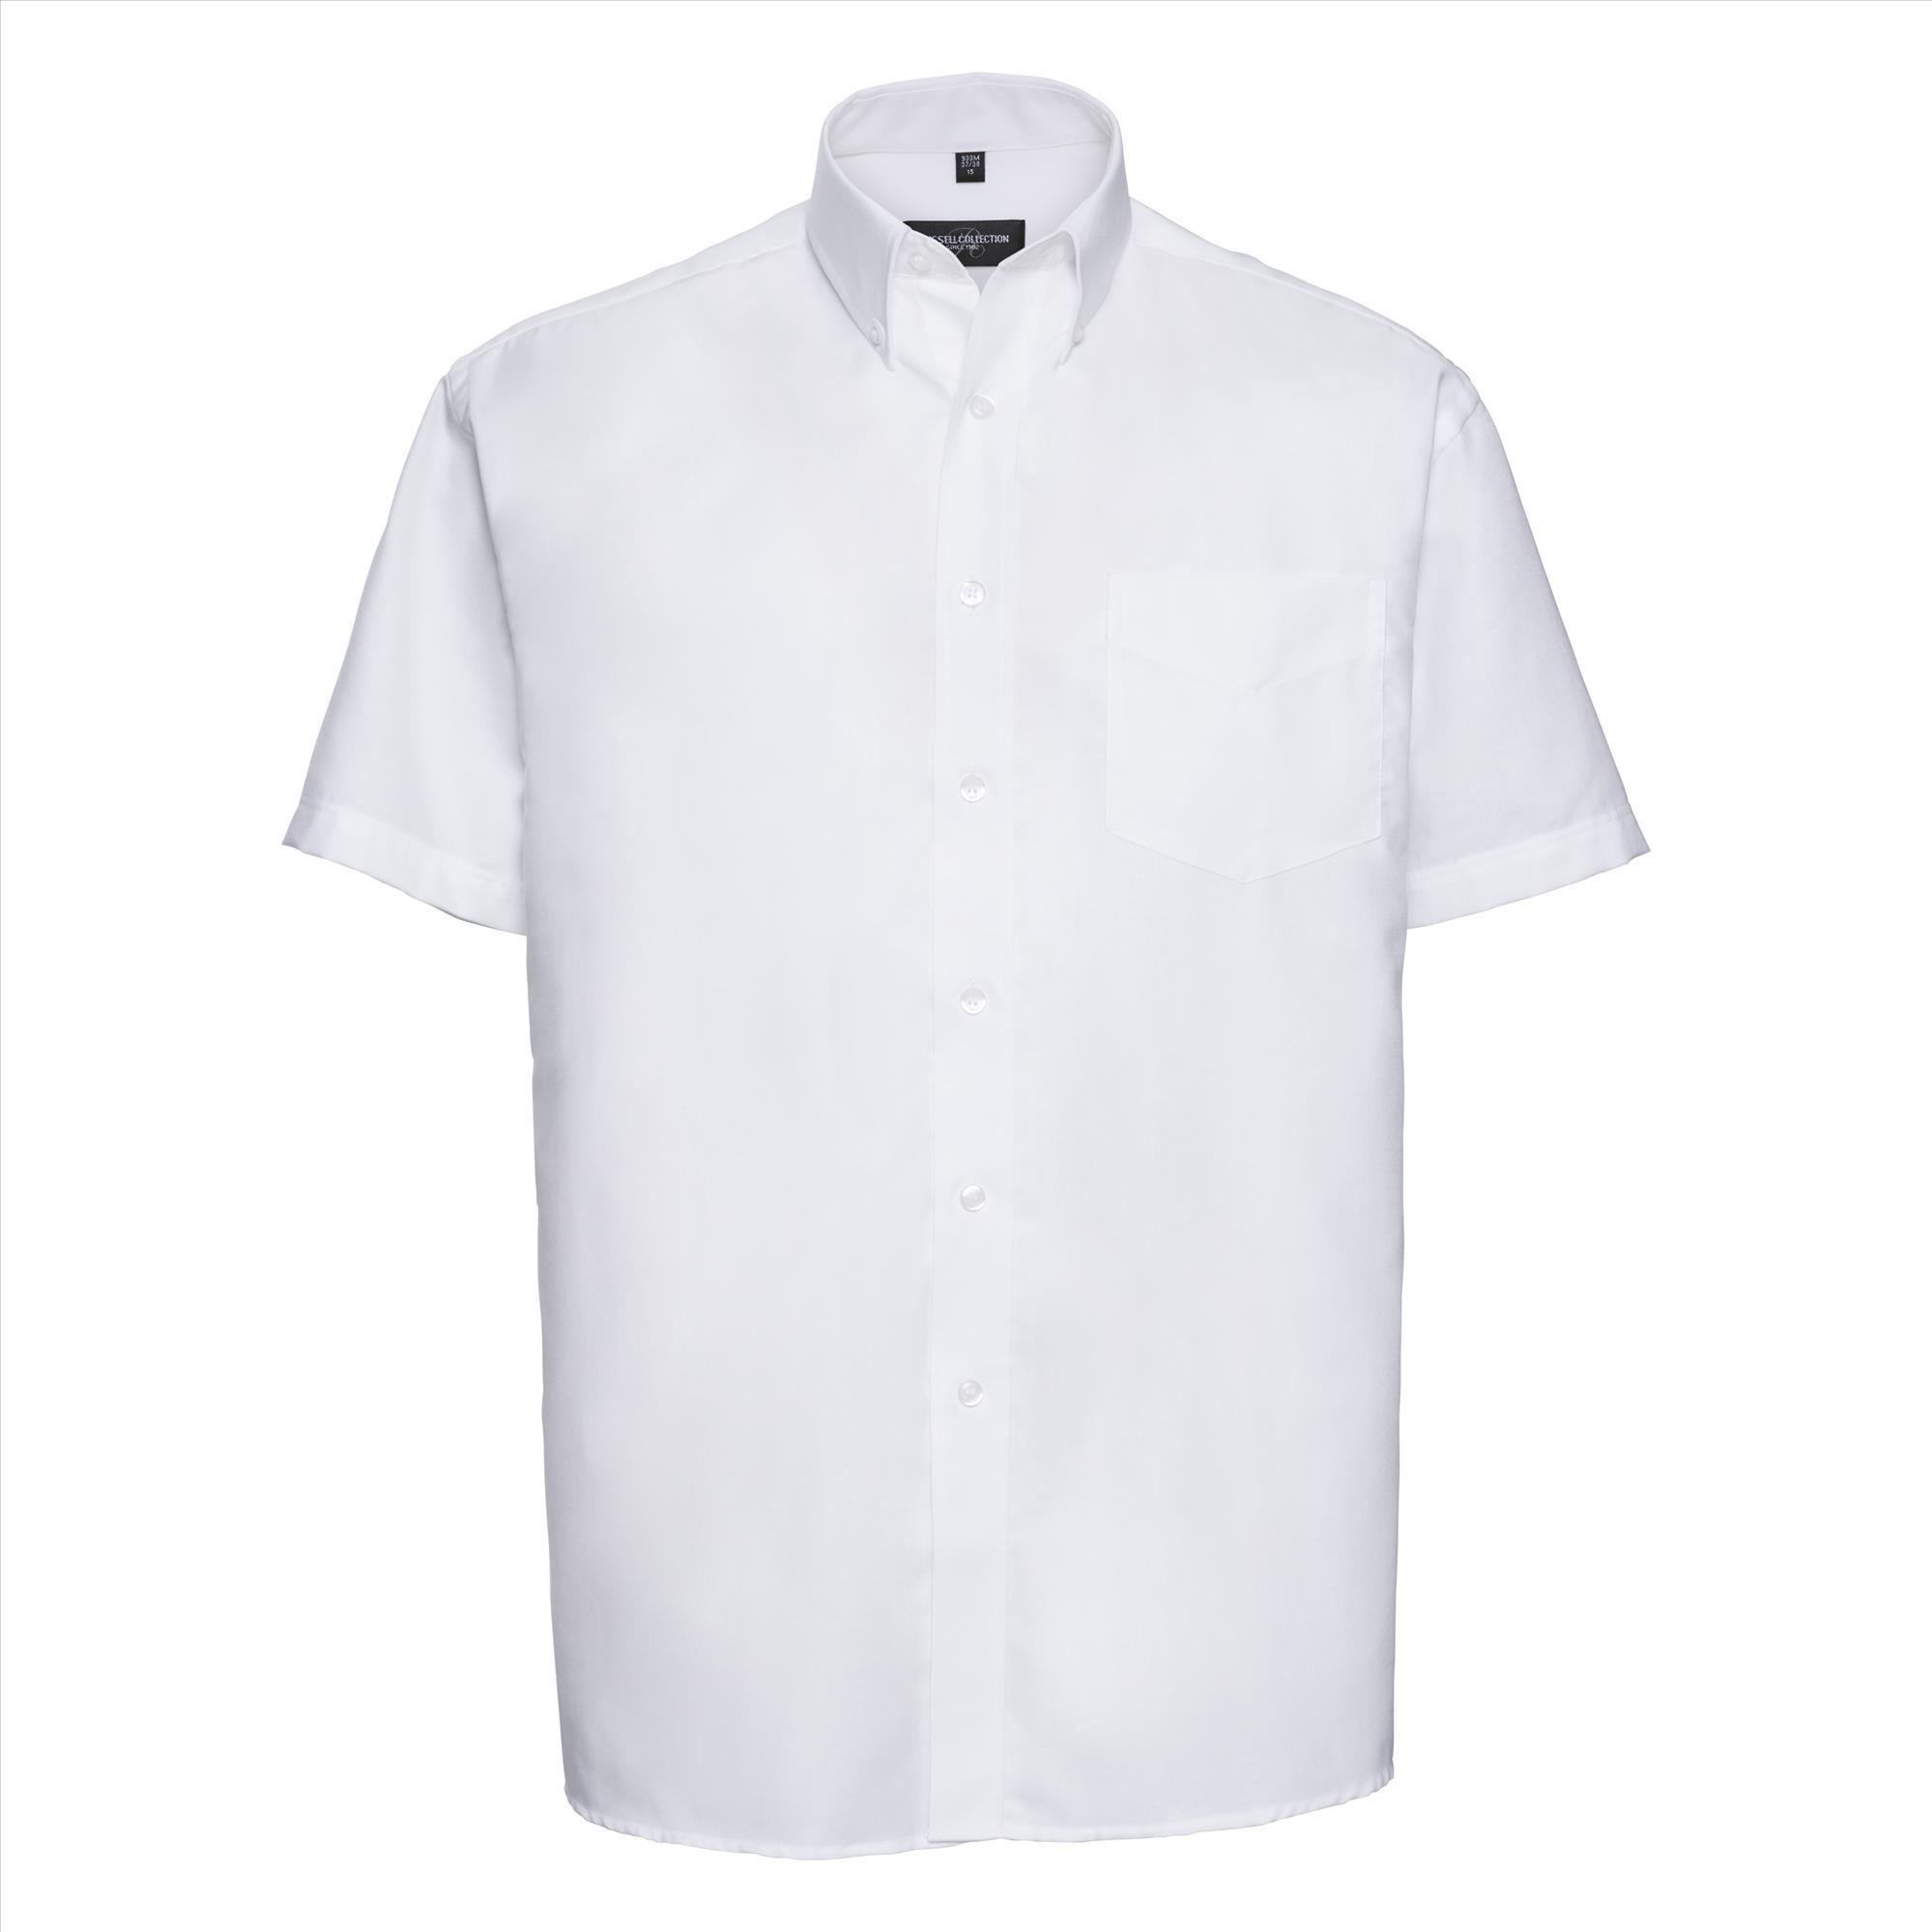 Heren overhemd wit klassiek bedrukking mogelijk